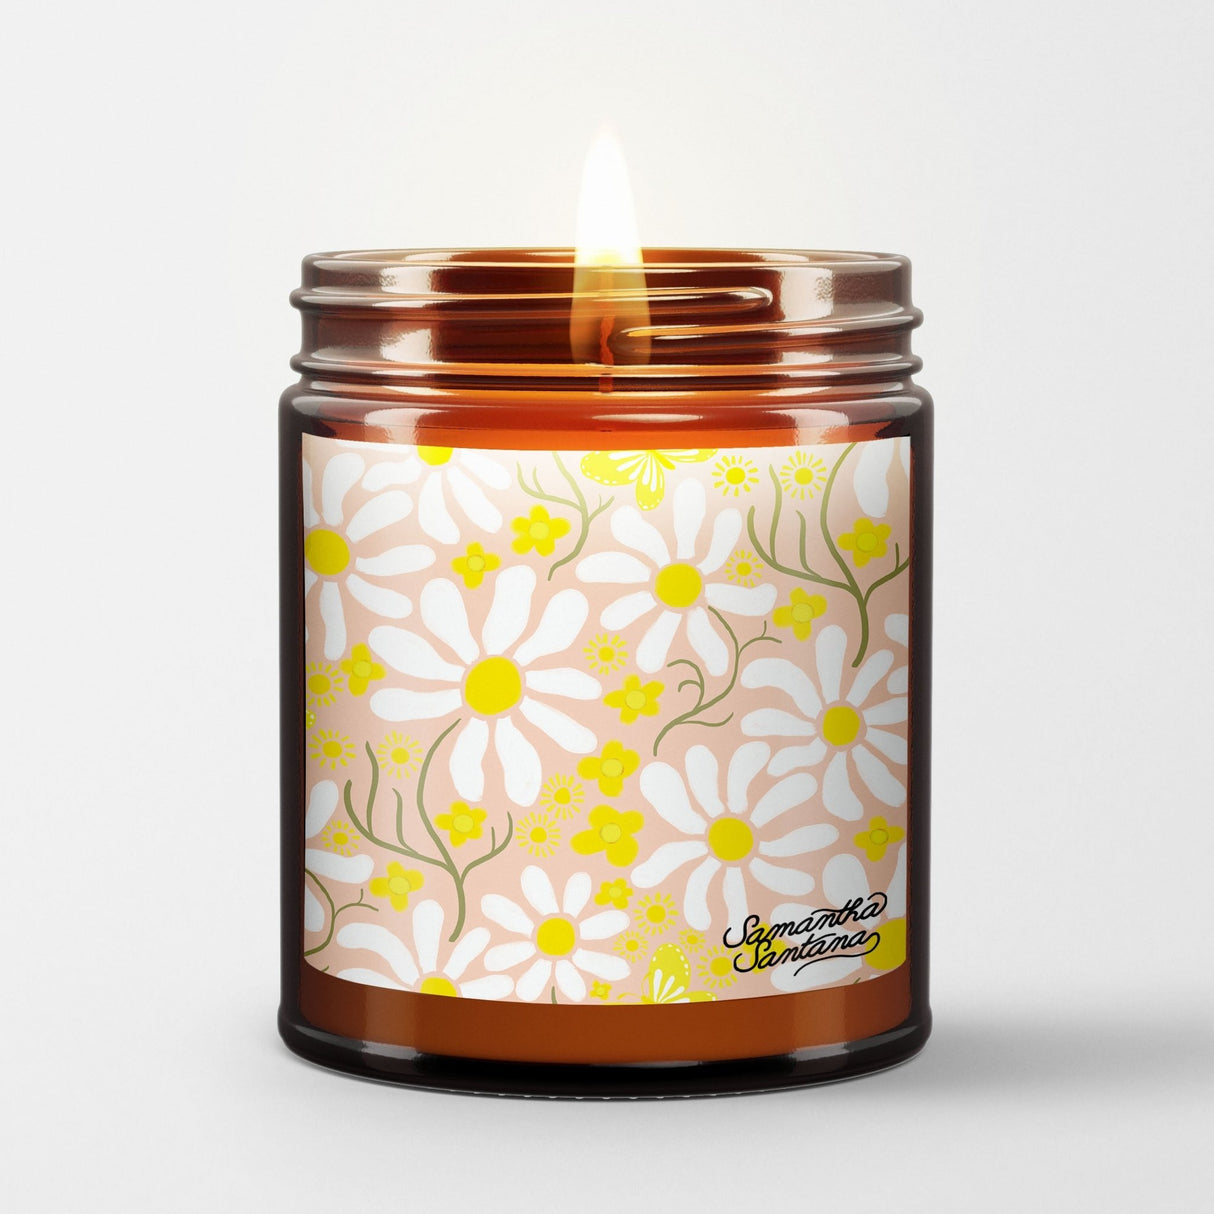 Samantha Santana Scented Candle in Amber Glass Jar: Spring Daze - Candlefy